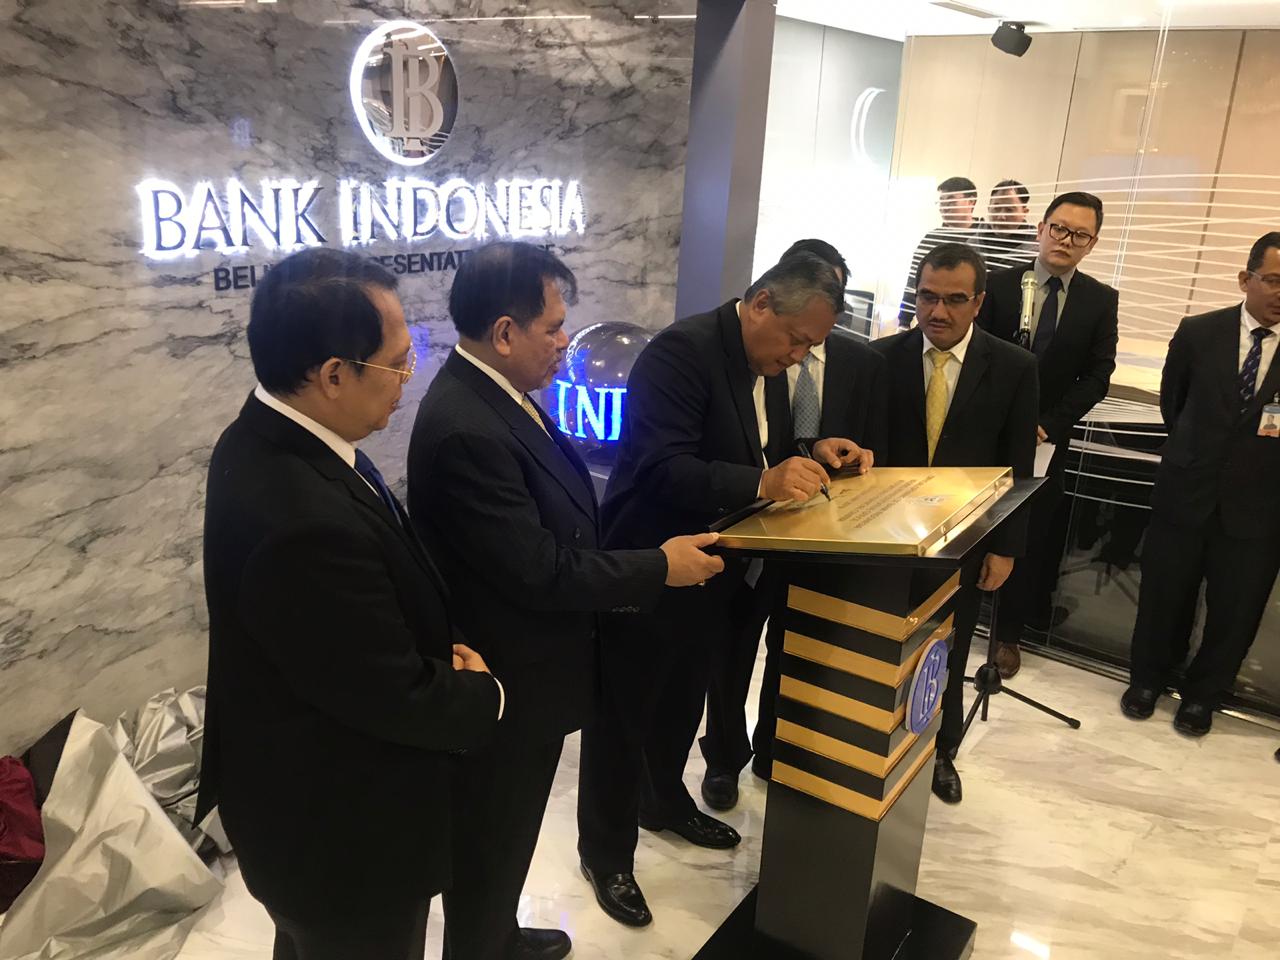 Strategi Bank Indonesia Gaet Investor Luar Negeri